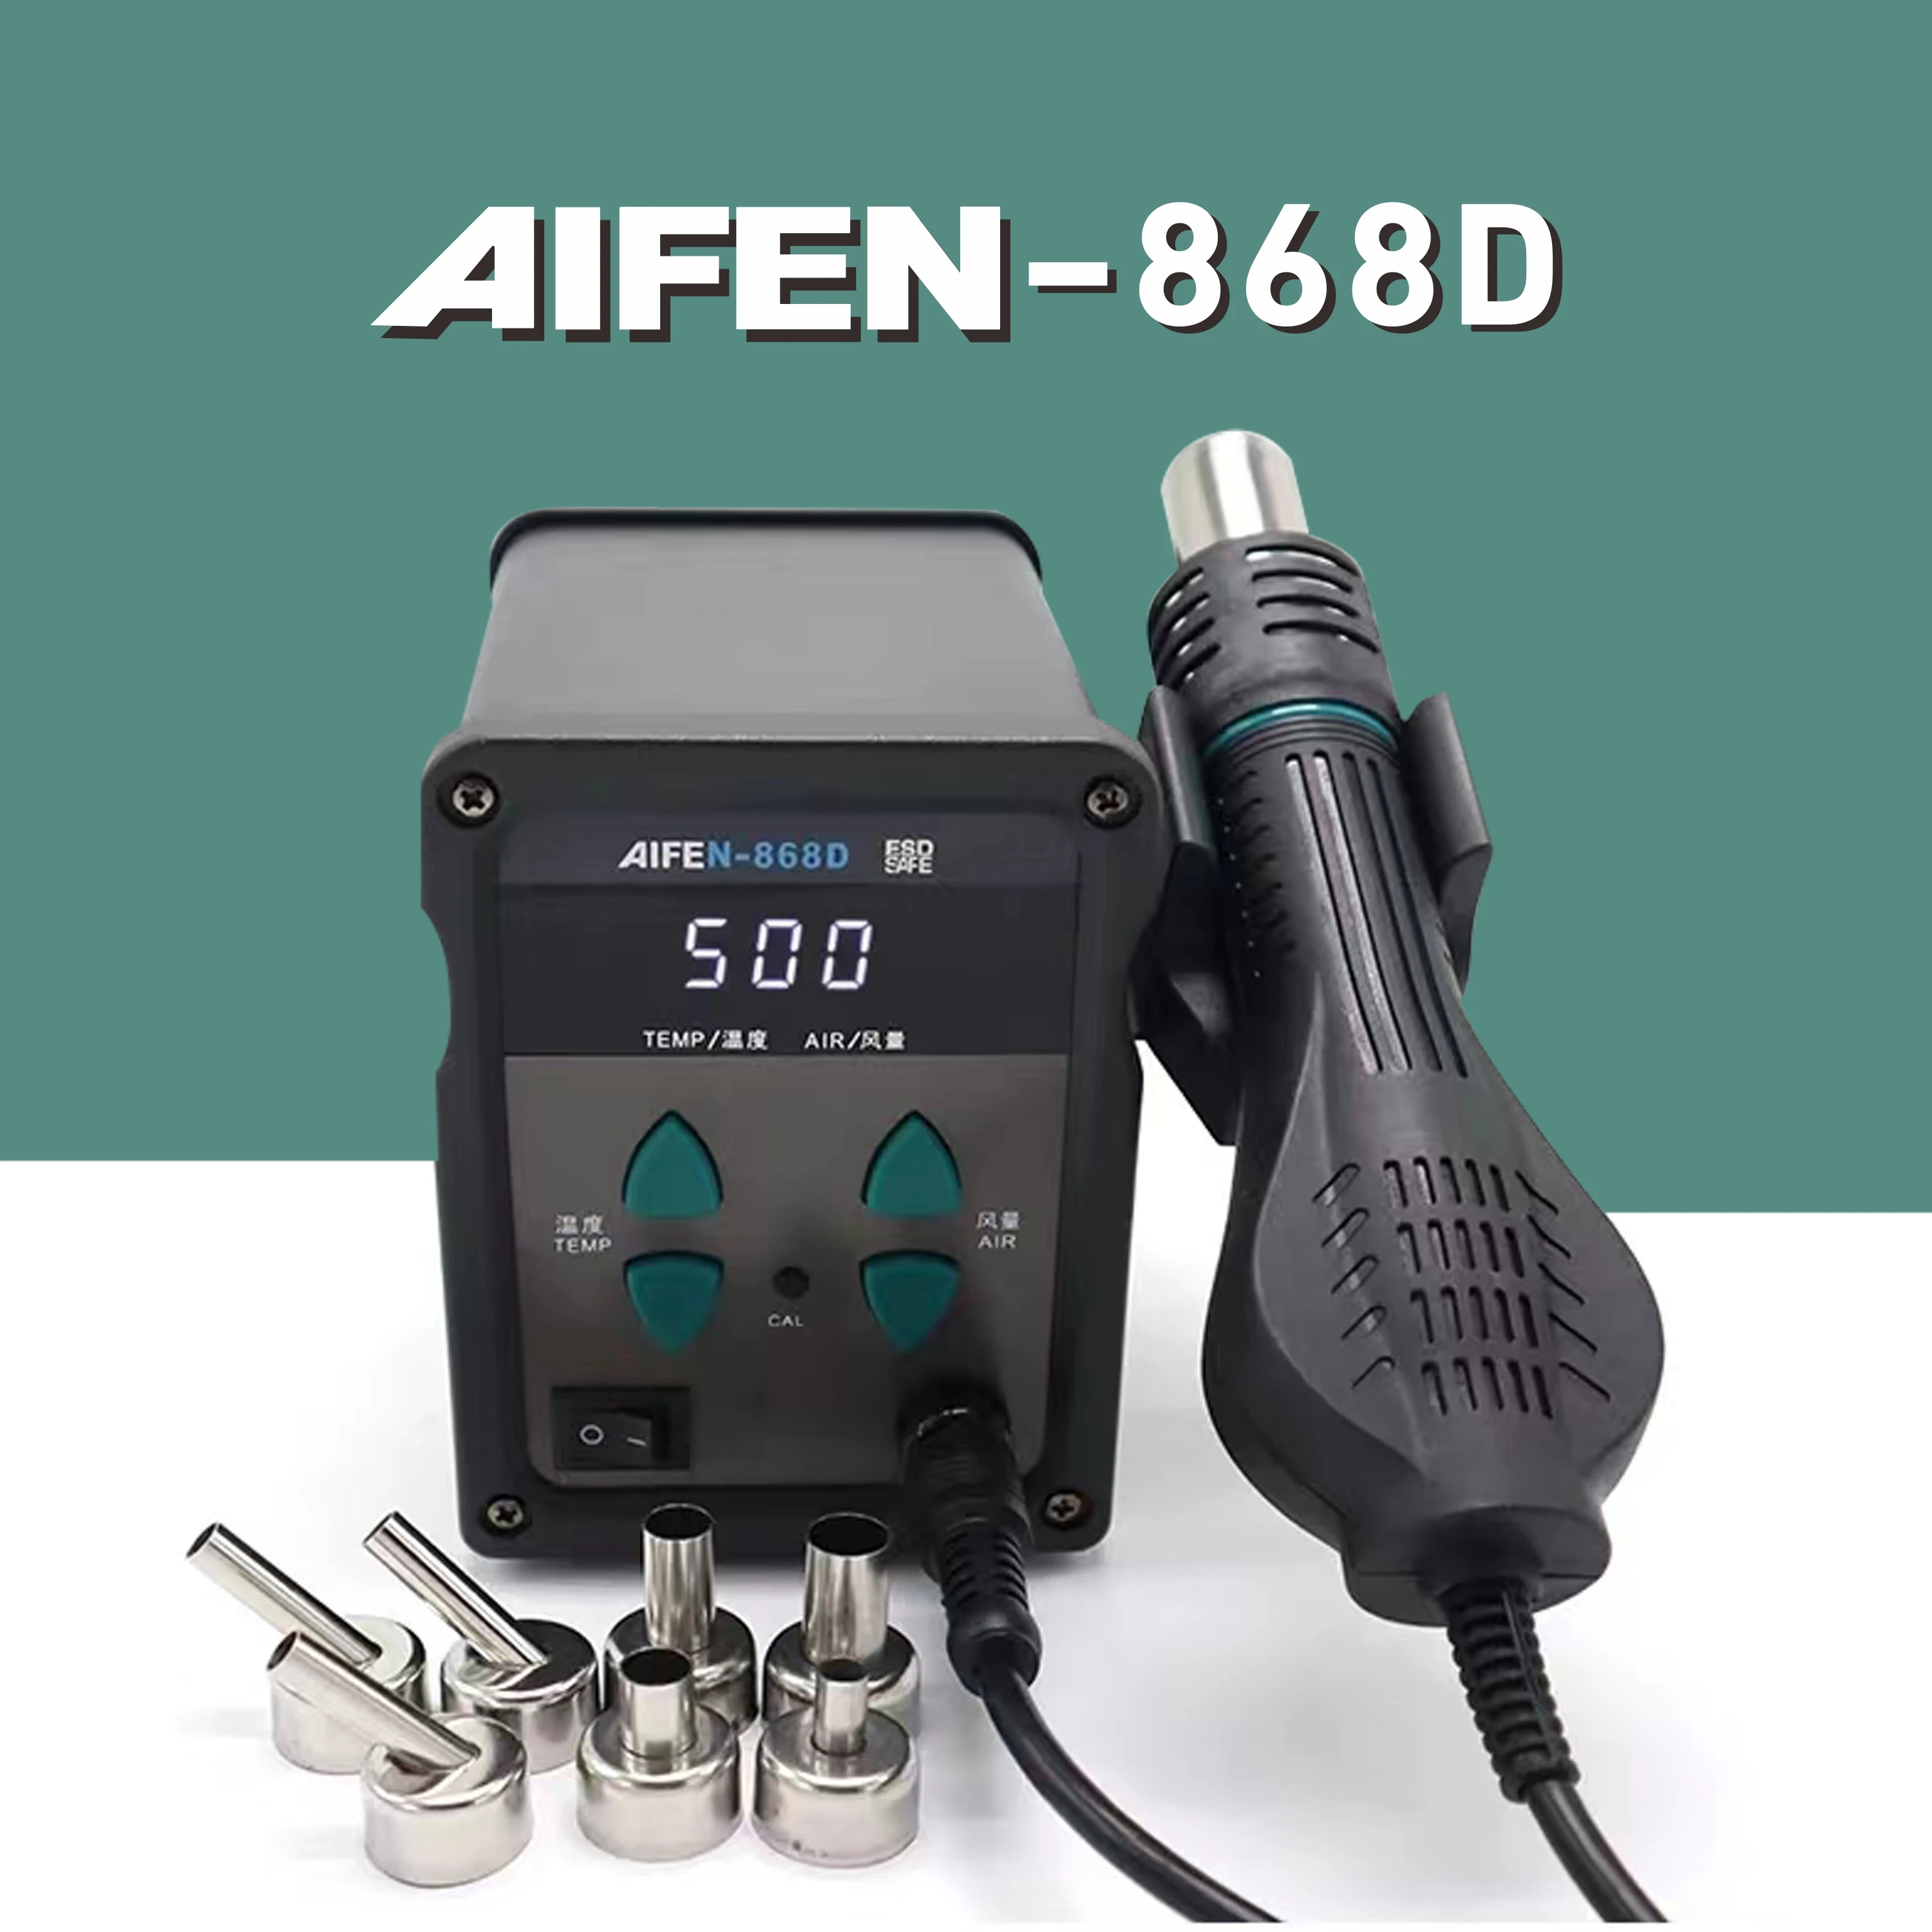 

AIFEN-868D Stasiun Udara Panas 700W LED Digital Solder Besi Pematrian Ulang Stasiun Solder Pistol Panas untuk Perbaikan Pengelas